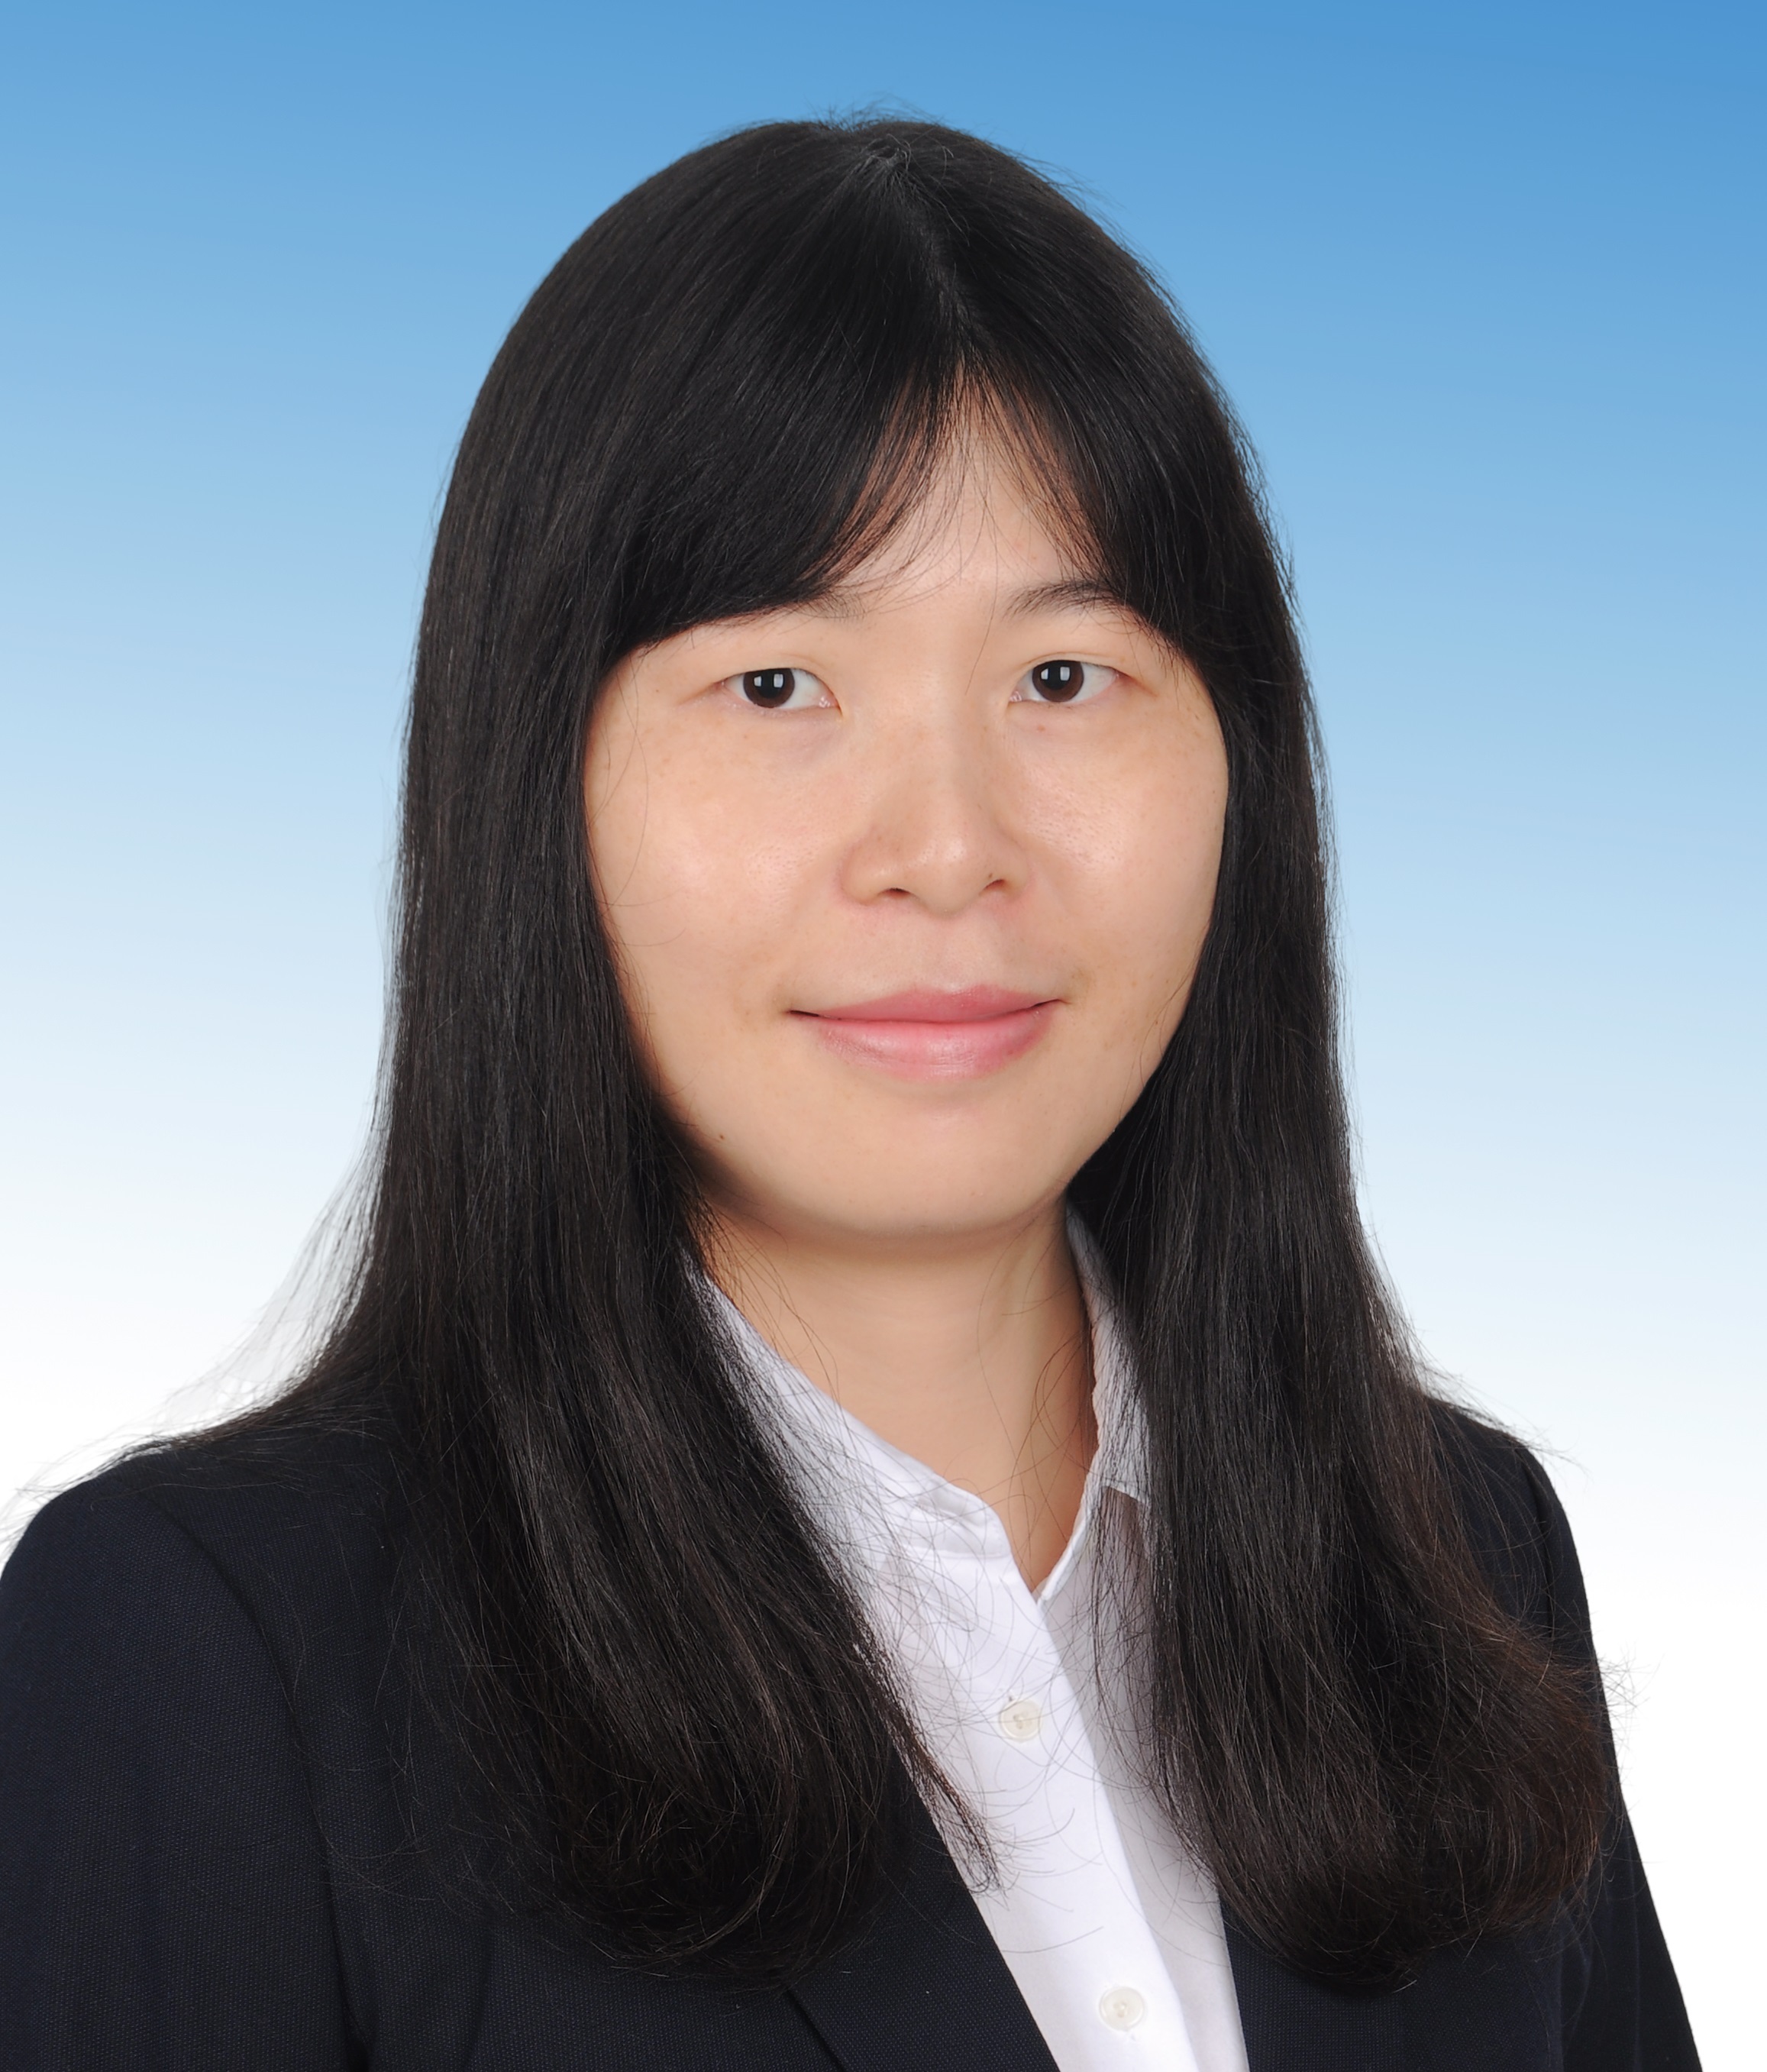 分析化学博士（核磁共振方向），毕业于中国科学院武汉磁共振中心，现任布鲁克BIOSPIN AIC部门高级现场应用专家。